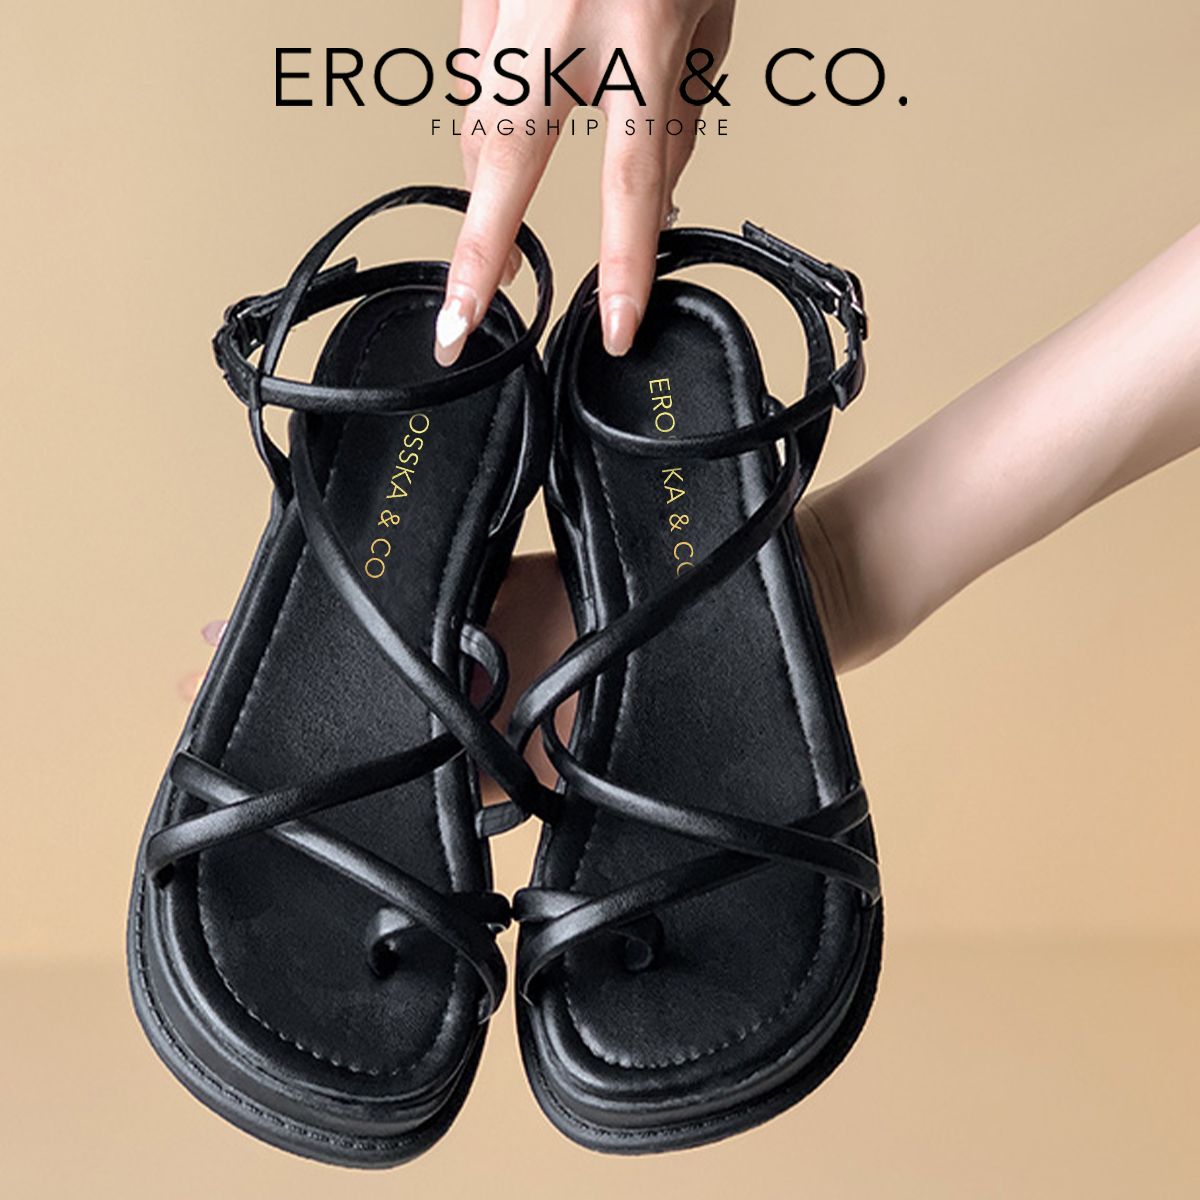 Erosska - Giày sandal nữ đế xuồng phối dây quai mảnh - SB001